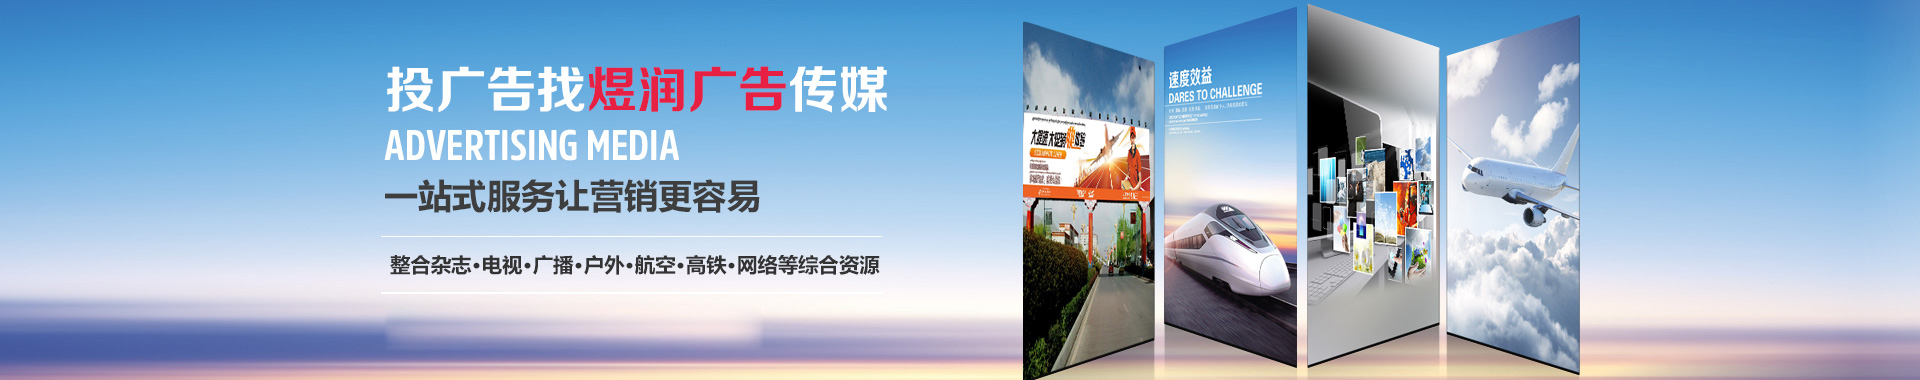 上海东方卫视频道广告投放电话,2020年广告刊例价格